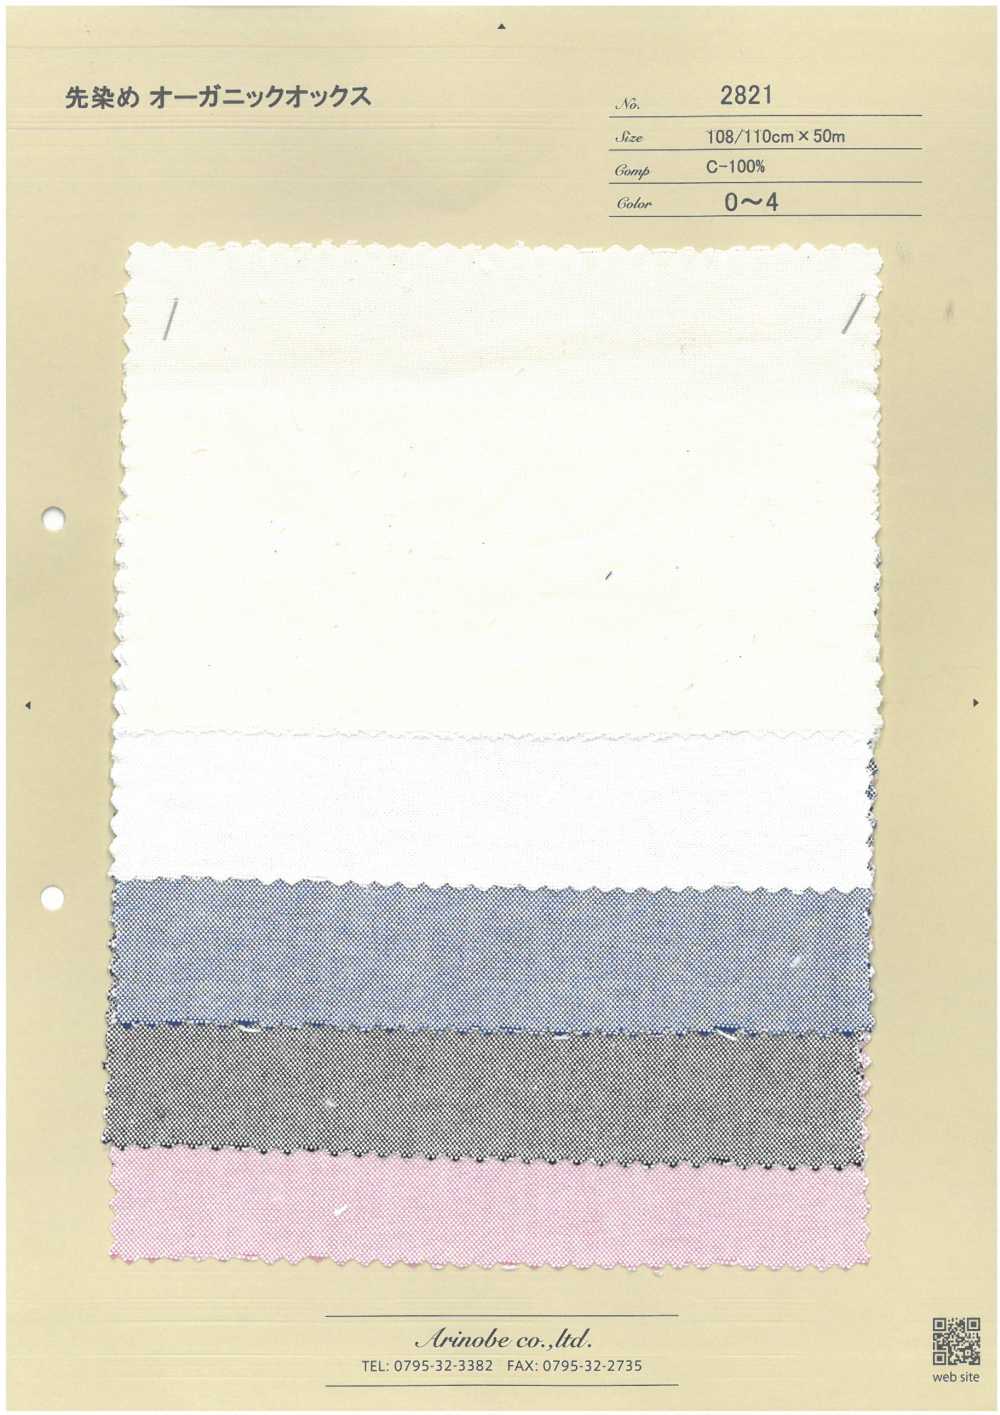 2821 Oxford Biologique Teint En Fil[Fabrication De Textile] ARINOBE CO., LTD.